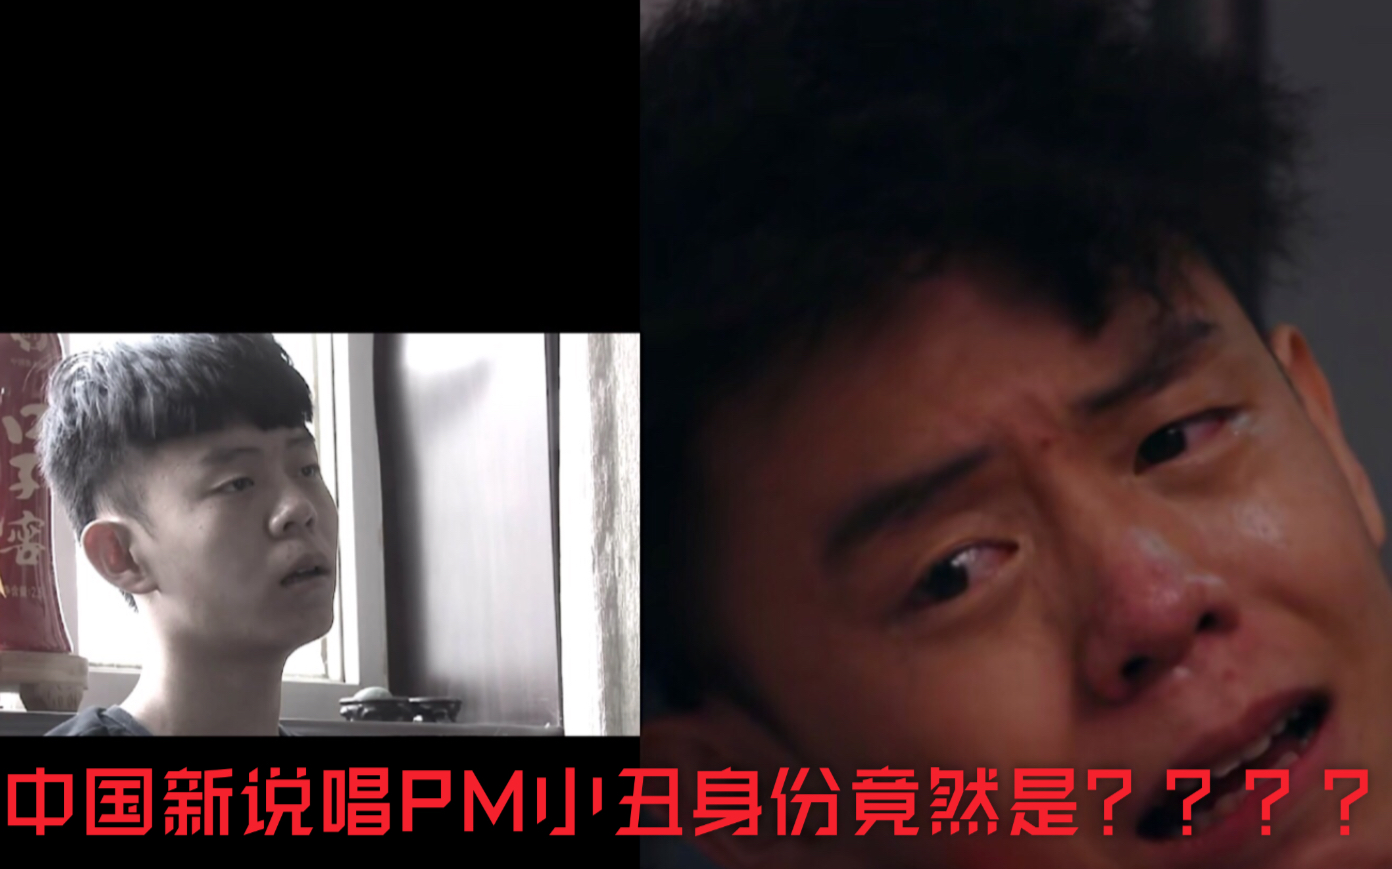 中国新说唱 现场泪奔 pm小丑 居然是 变形计 第十季中的男主角？？